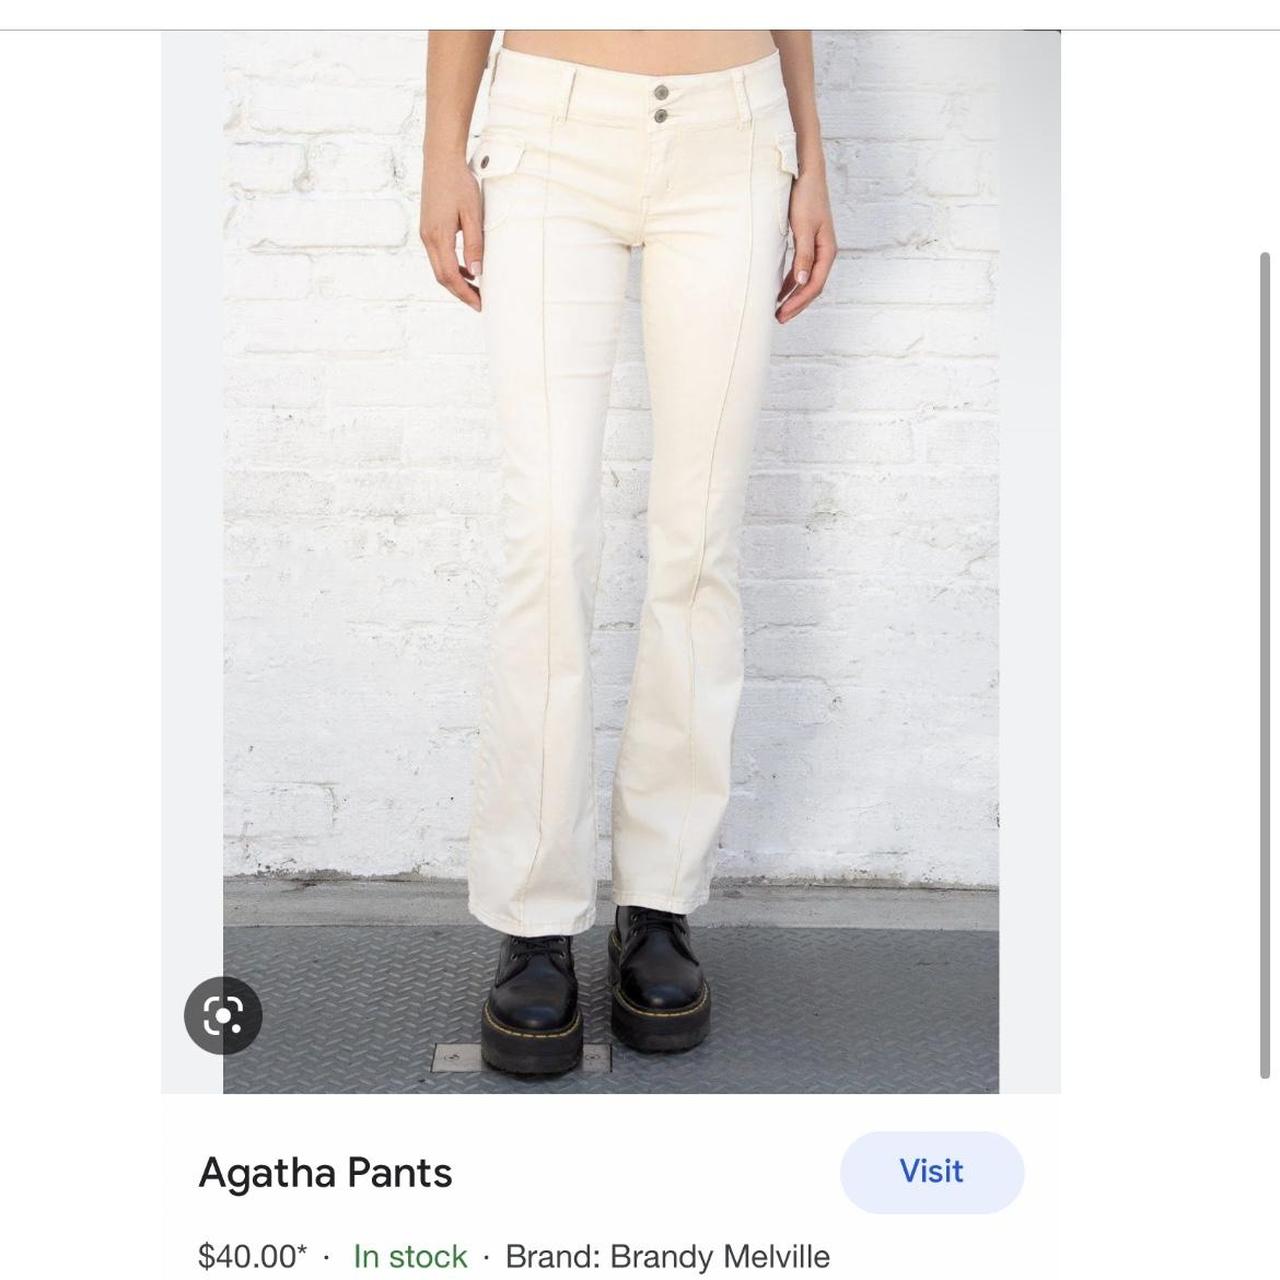 Agatha Pants